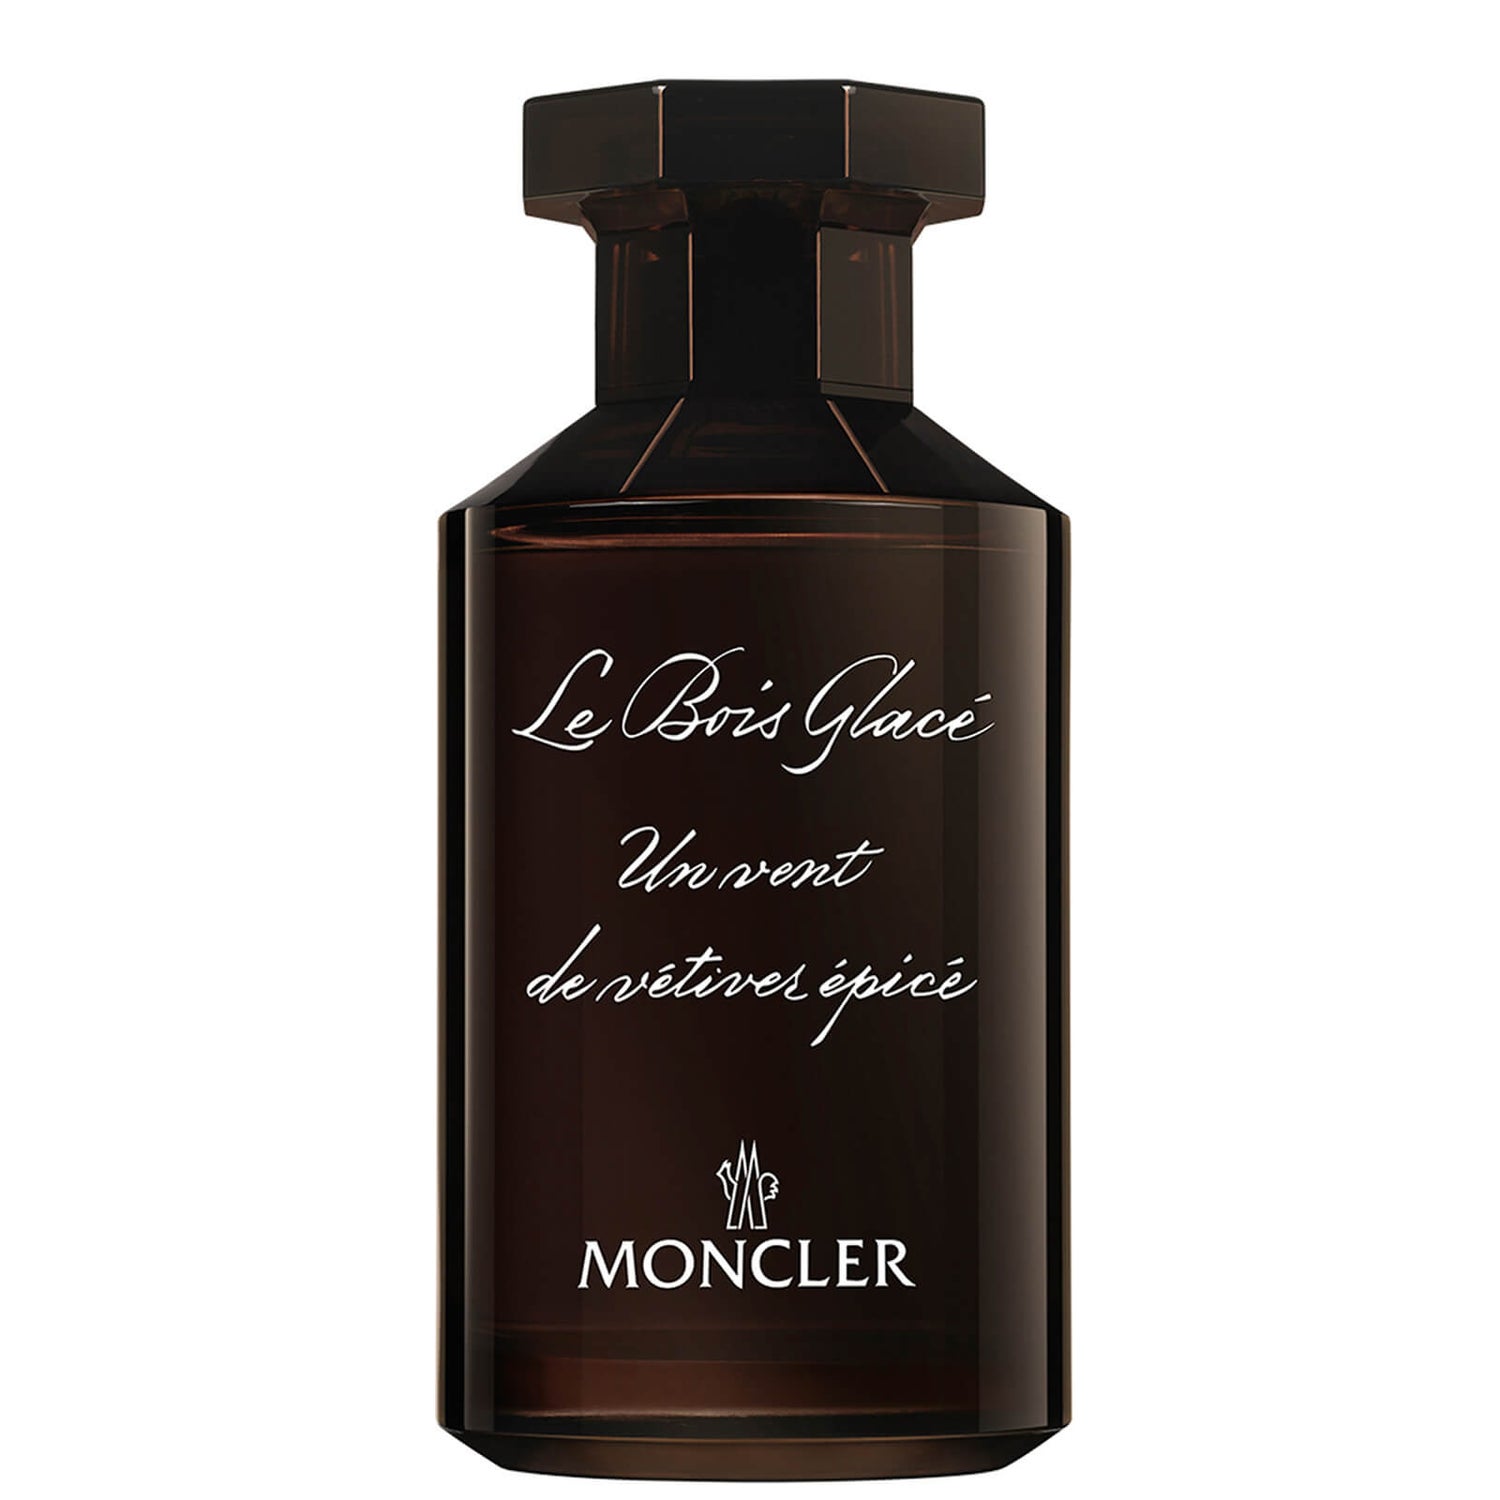 Moncler Les Sommets Collection Le Bois Glace Eau de Parfum 100ml